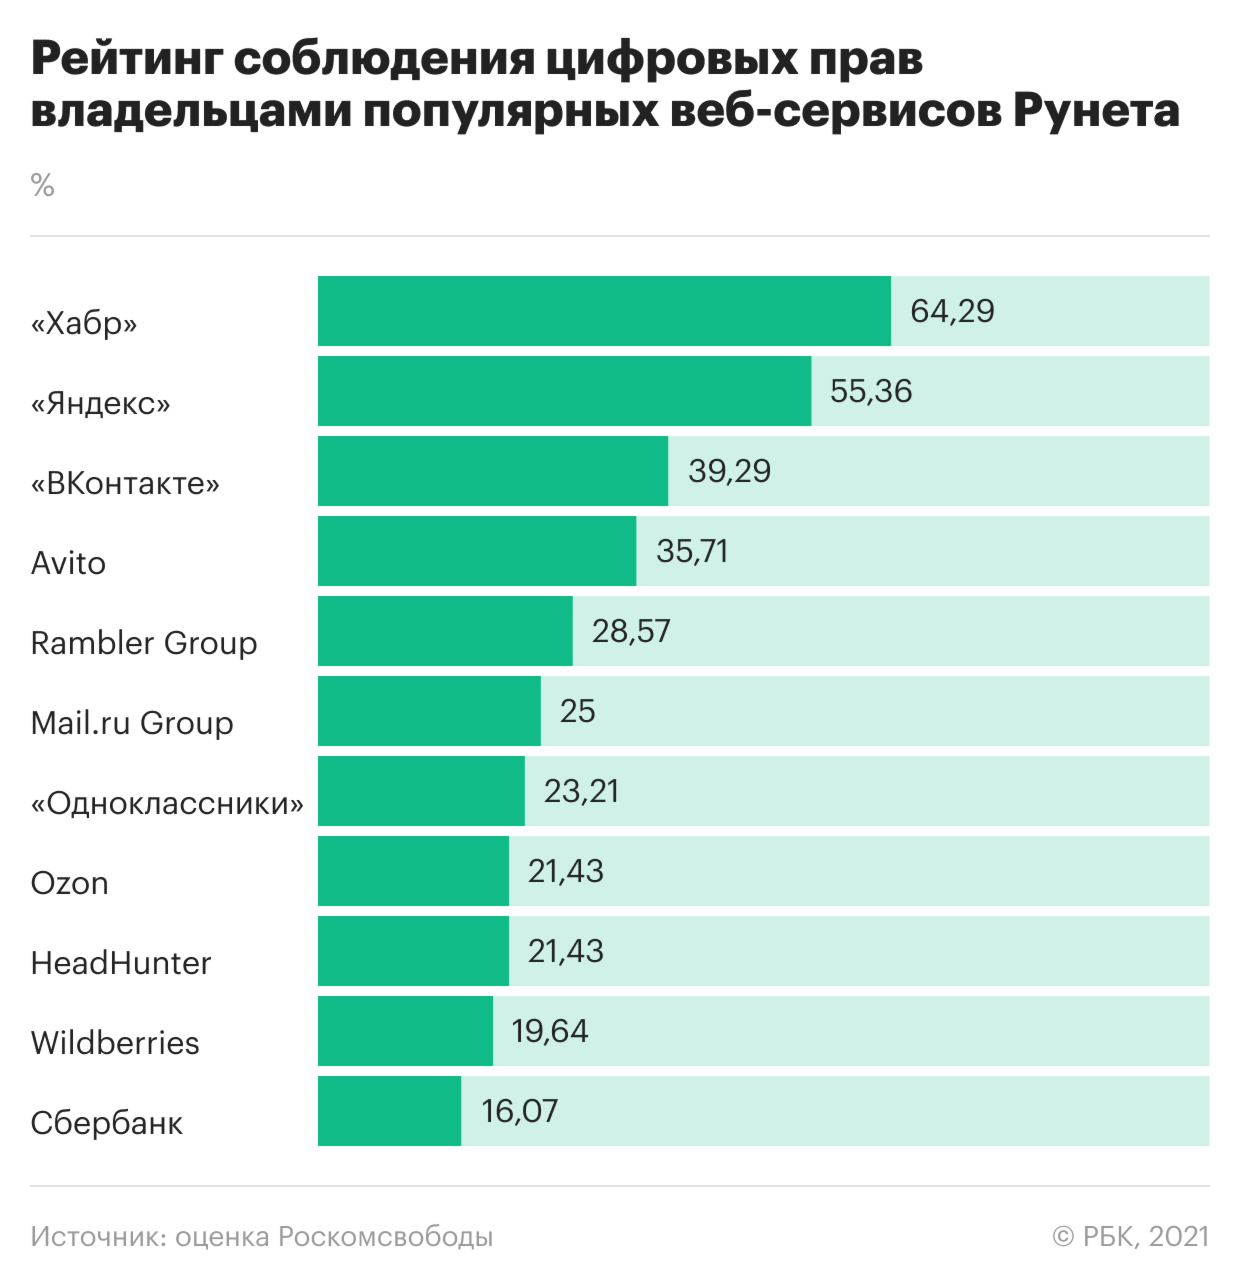 Эксперты оценили соблюдение цифровых прав крупнейшими сервисами Рунета